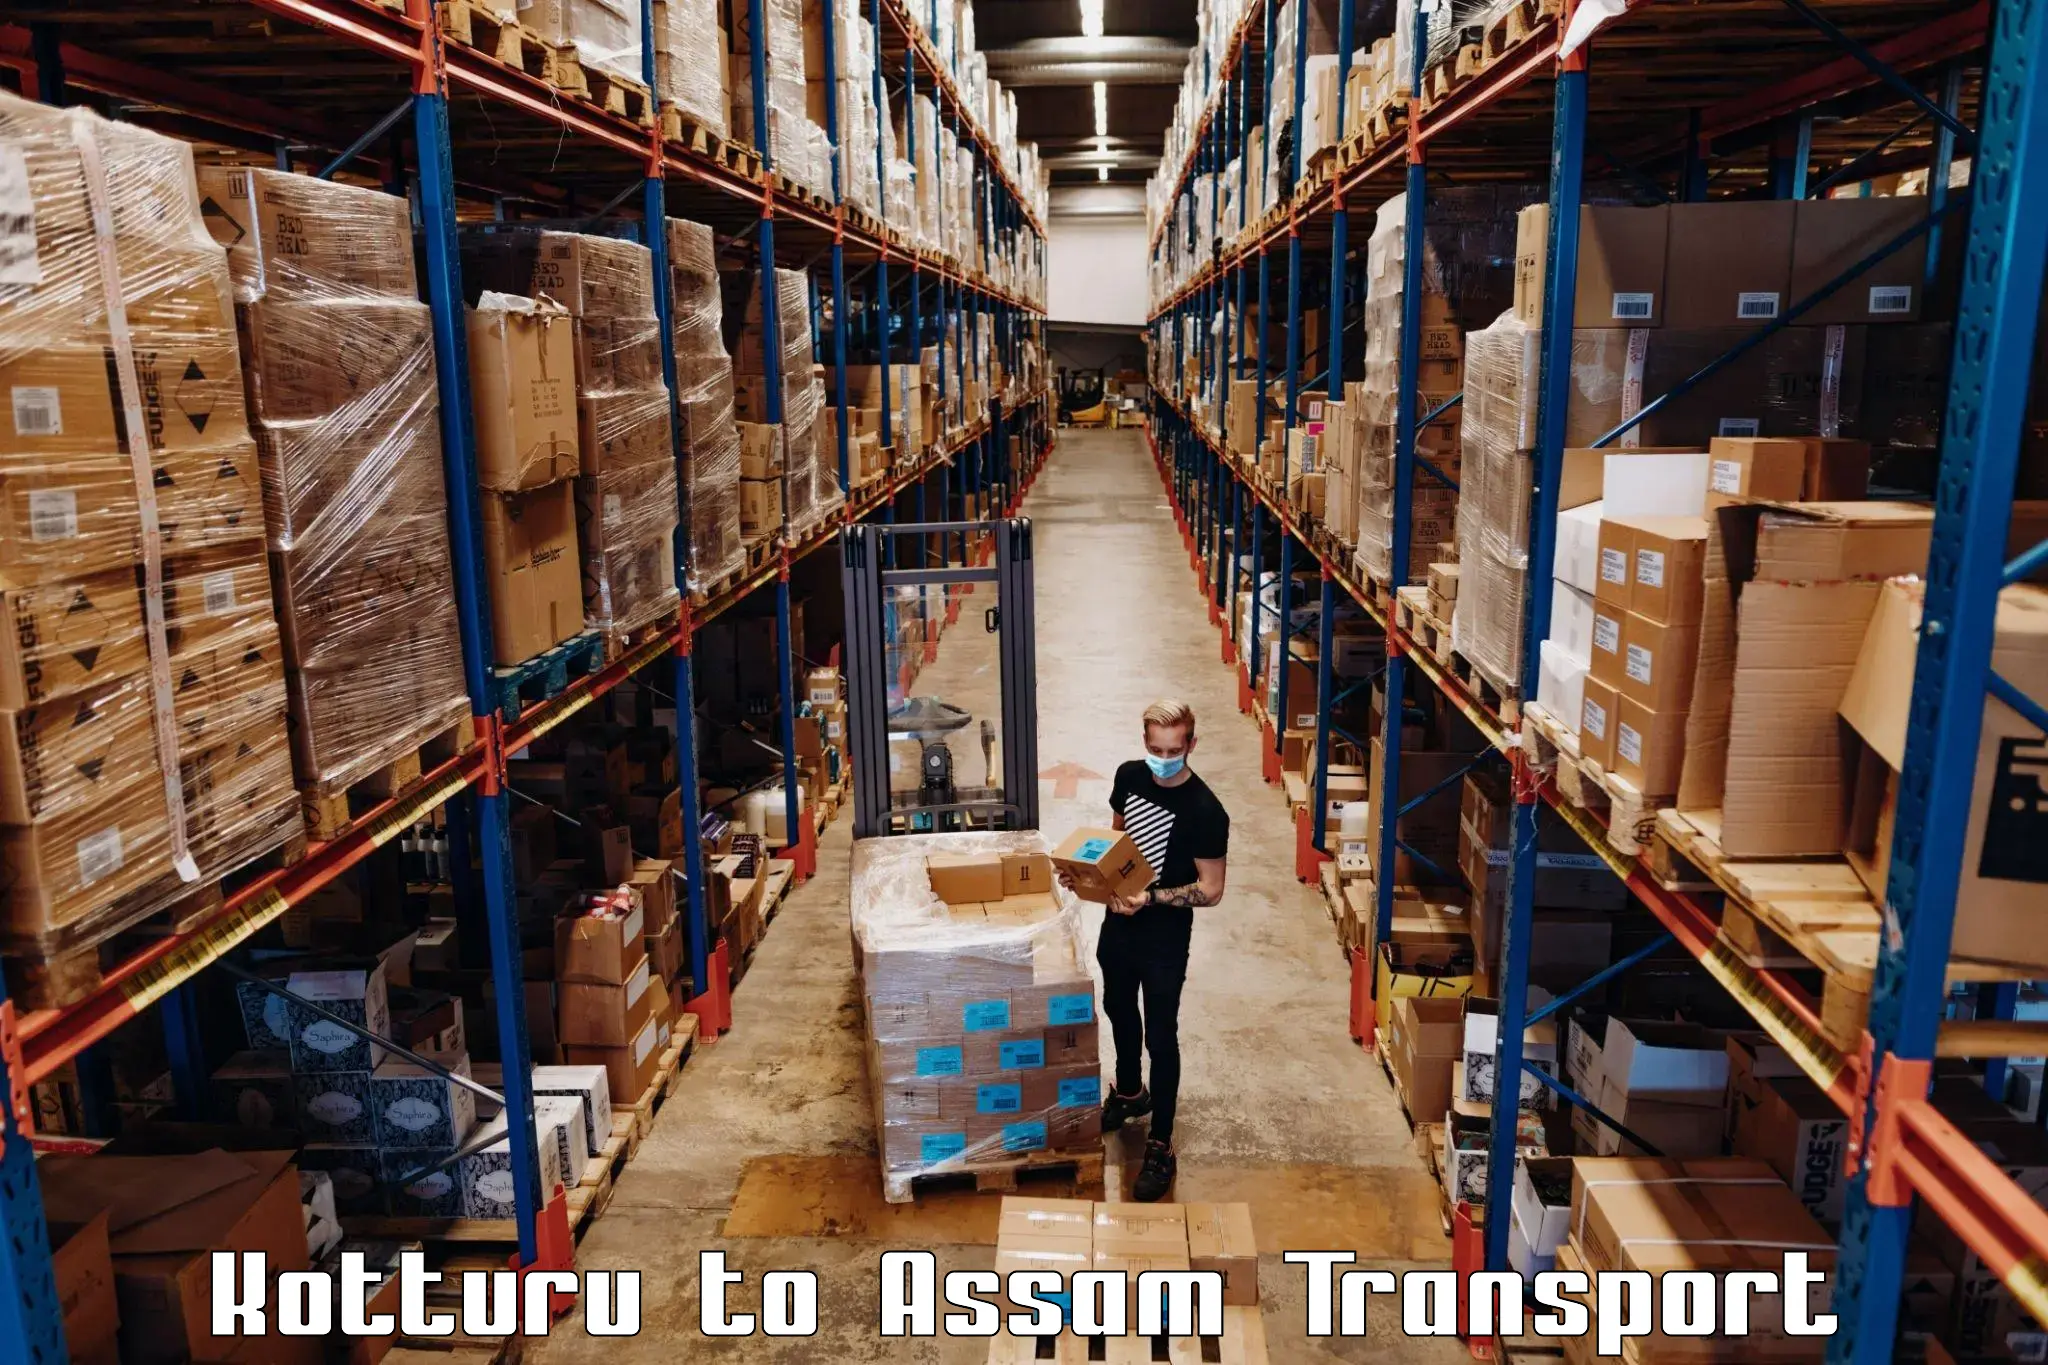 India truck logistics services Kotturu to Hajo